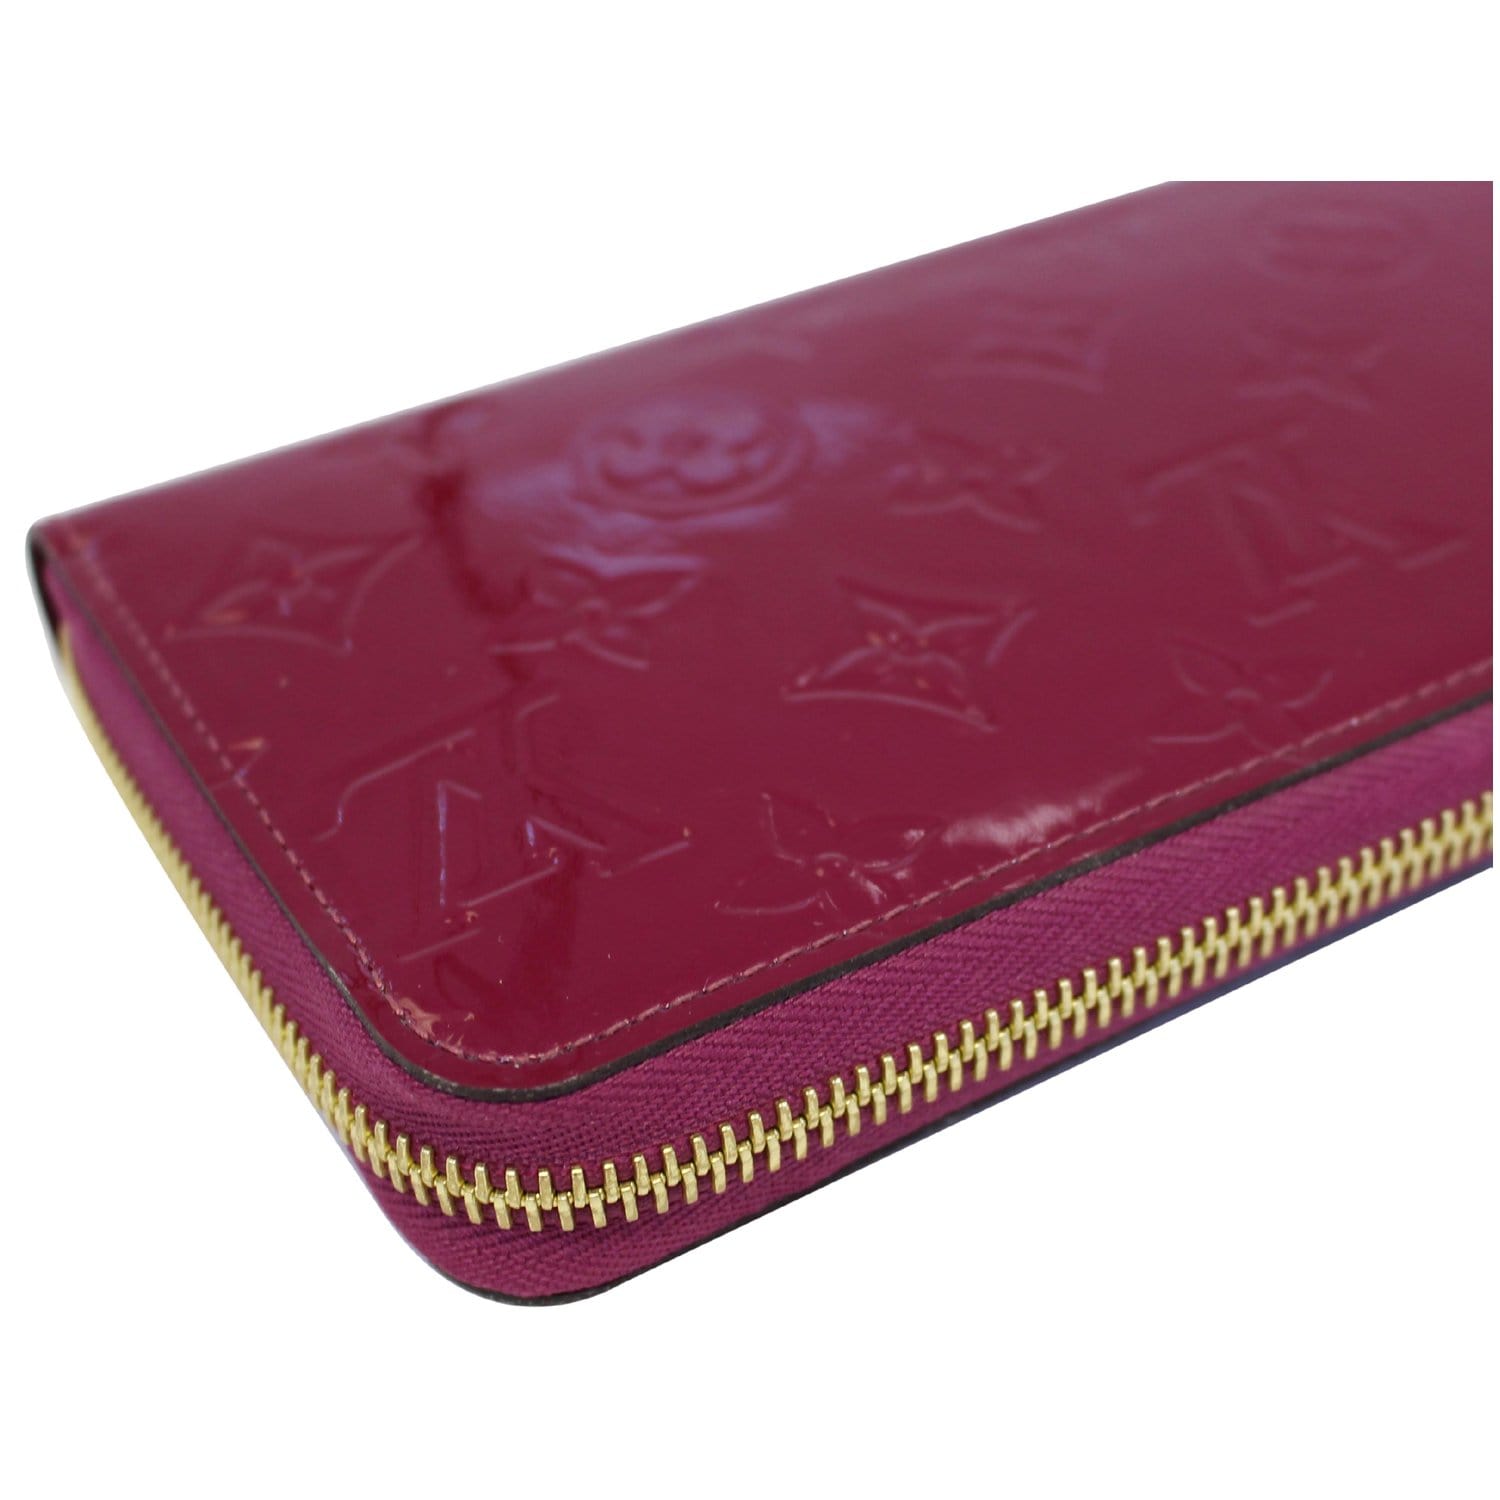 Louis Vuitton Louis Vuitton Zippy Wallet Purple Amarante Vernis